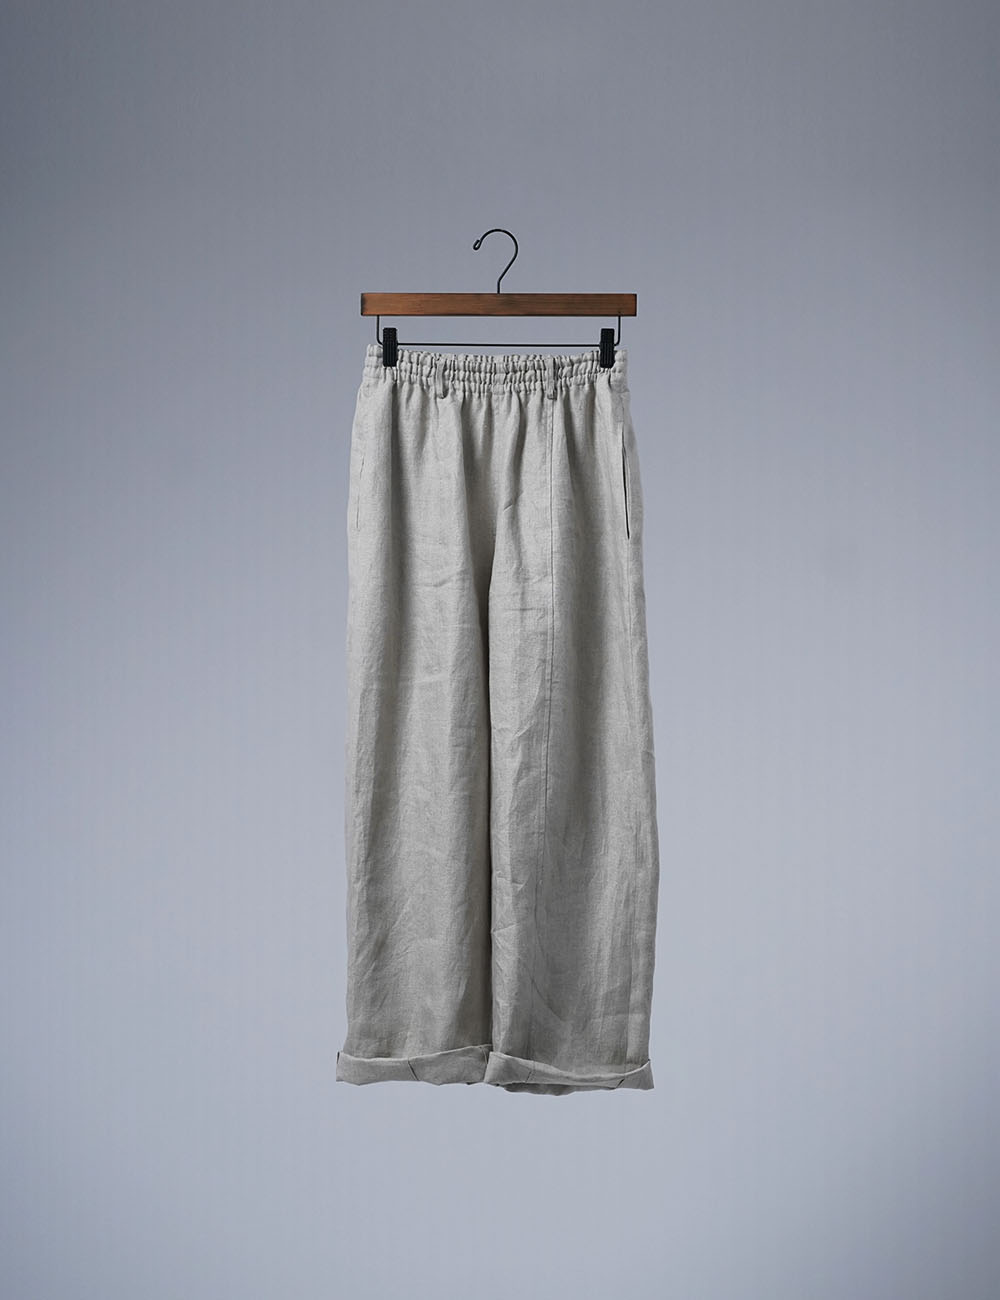 【プレミアム】 ゆったりしすぎない Linen pants リネン100% バギーパンツ / フラックス b011f-flx1